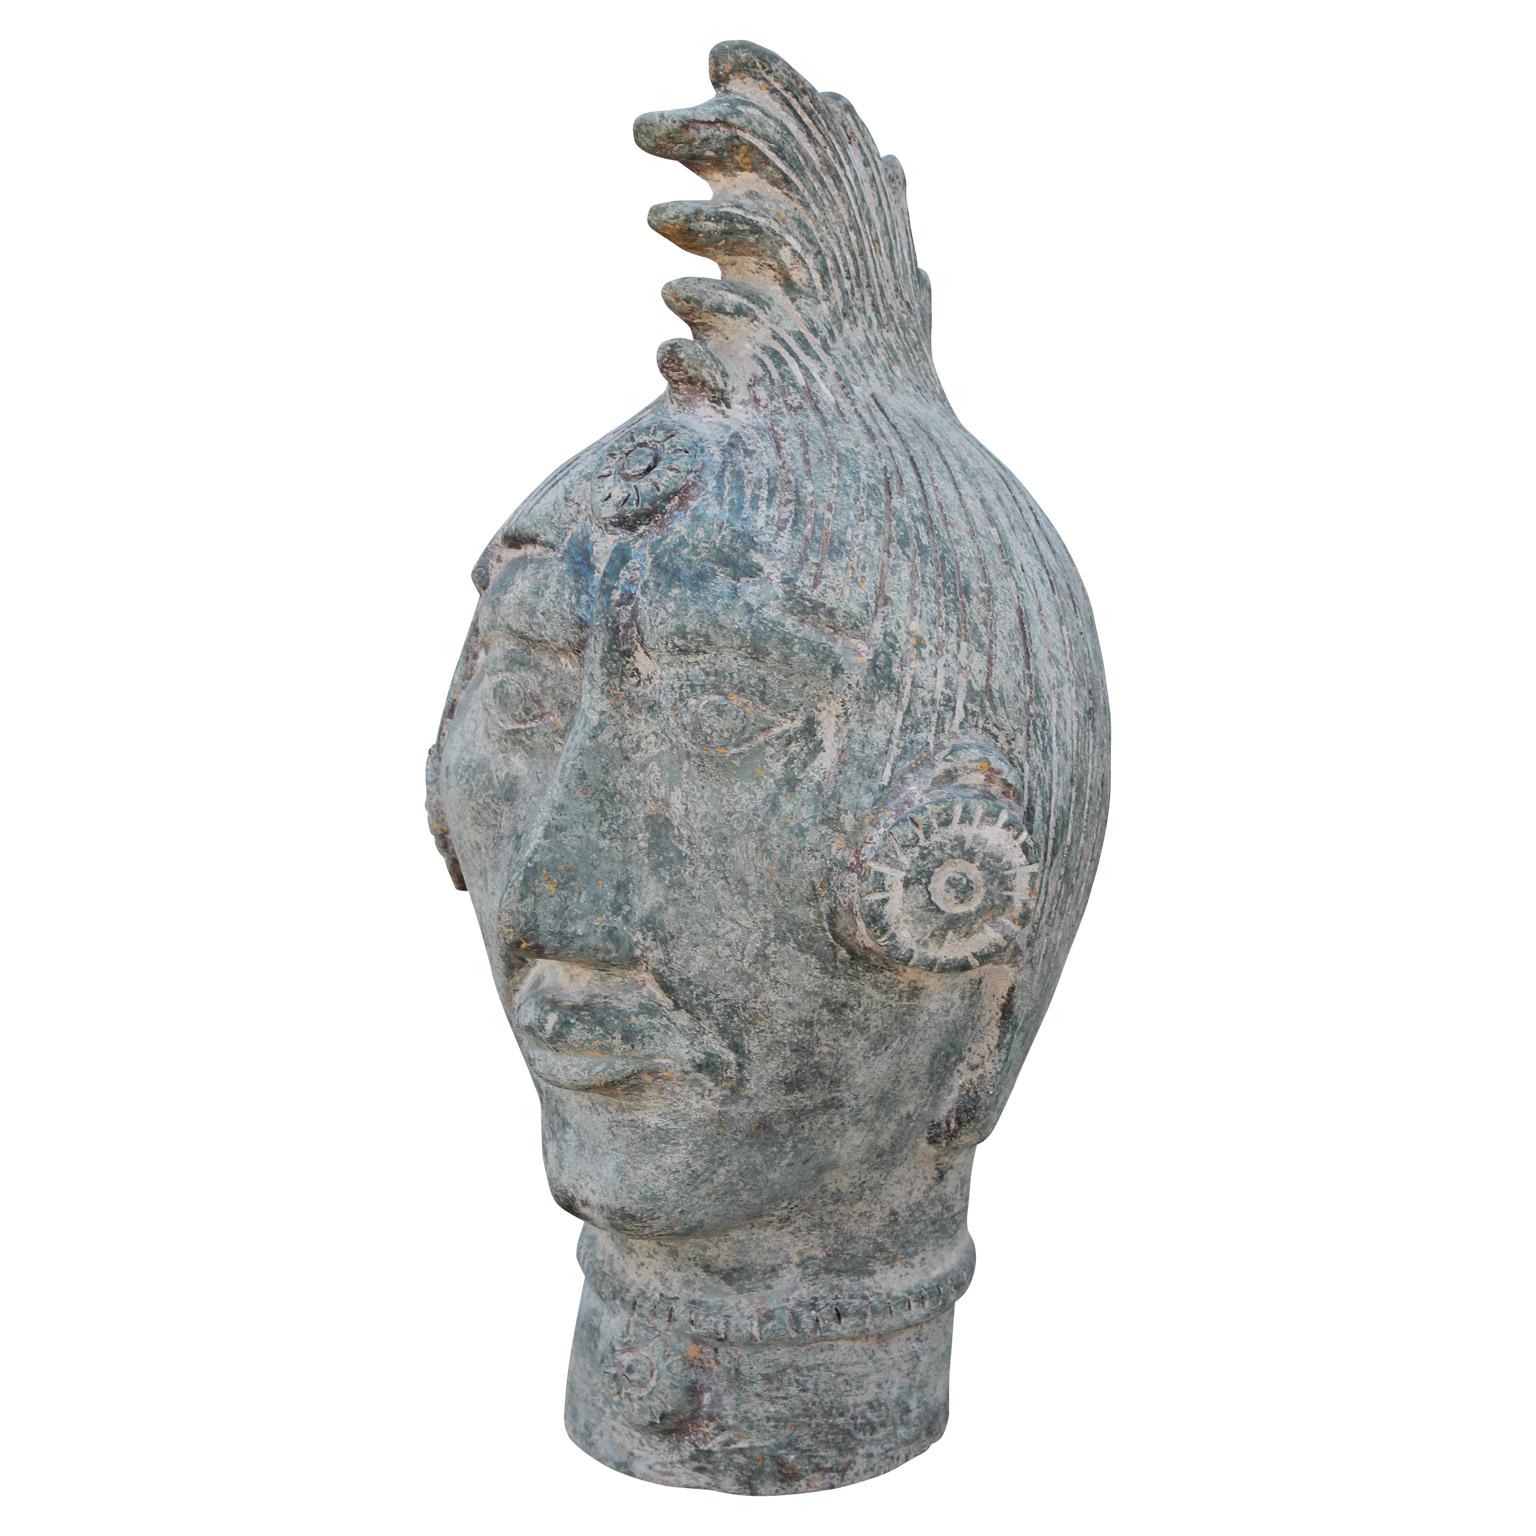 Paire monumentale de têtes sculpturales mayas en terre cuite et en bronze patiné - Sculpture de Unknown